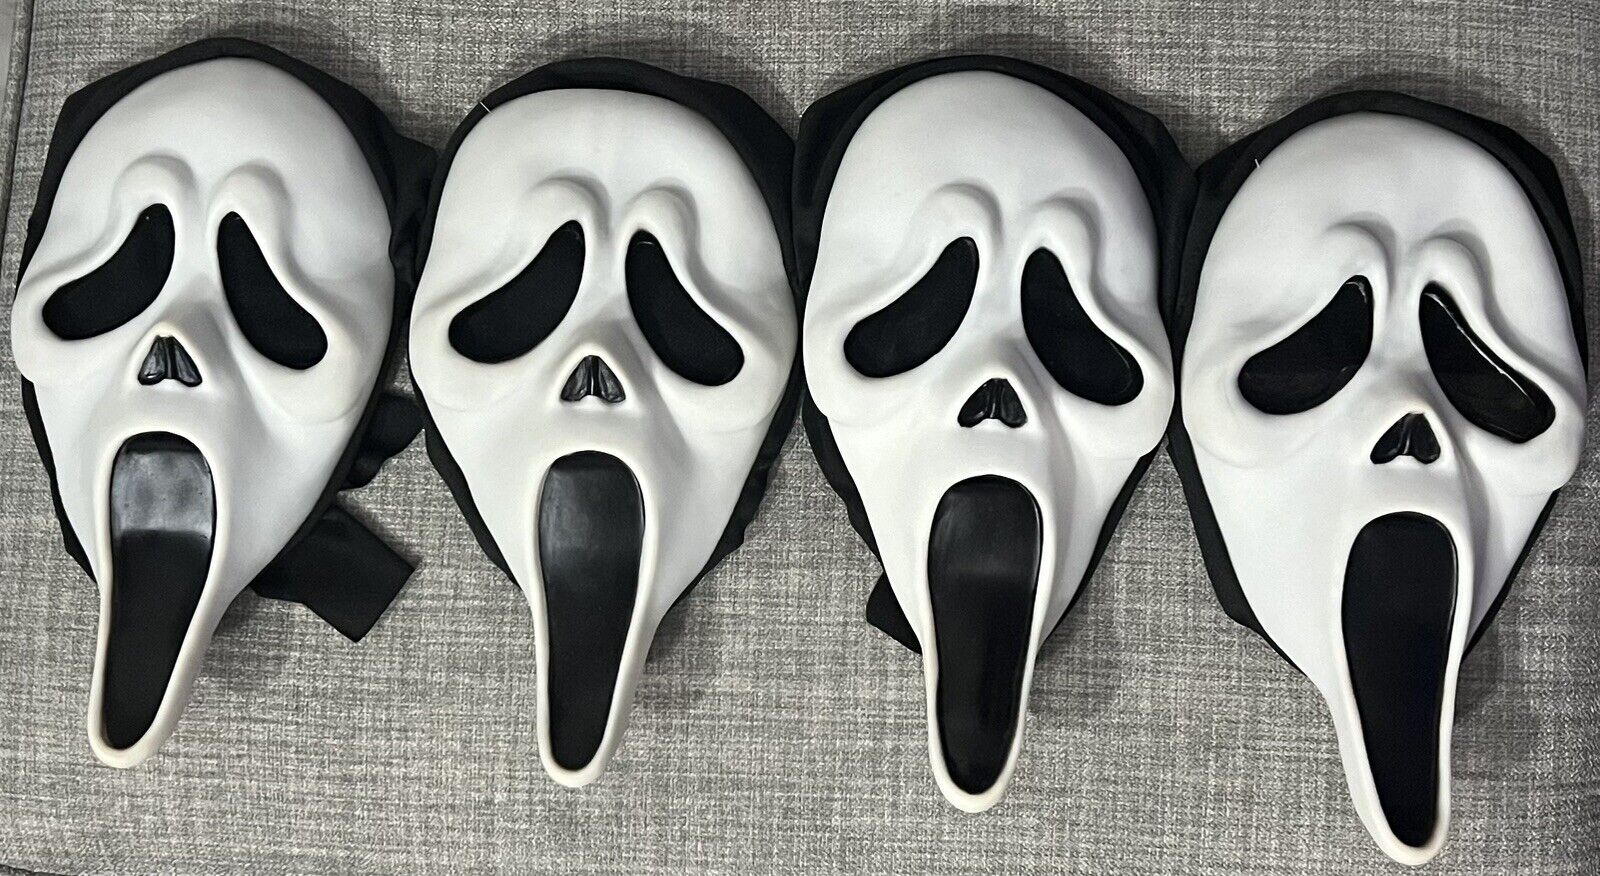 4 Scream Ghostface Mask Easter Unlimited 2023 / 2024 EU Stamped Fun World Horror